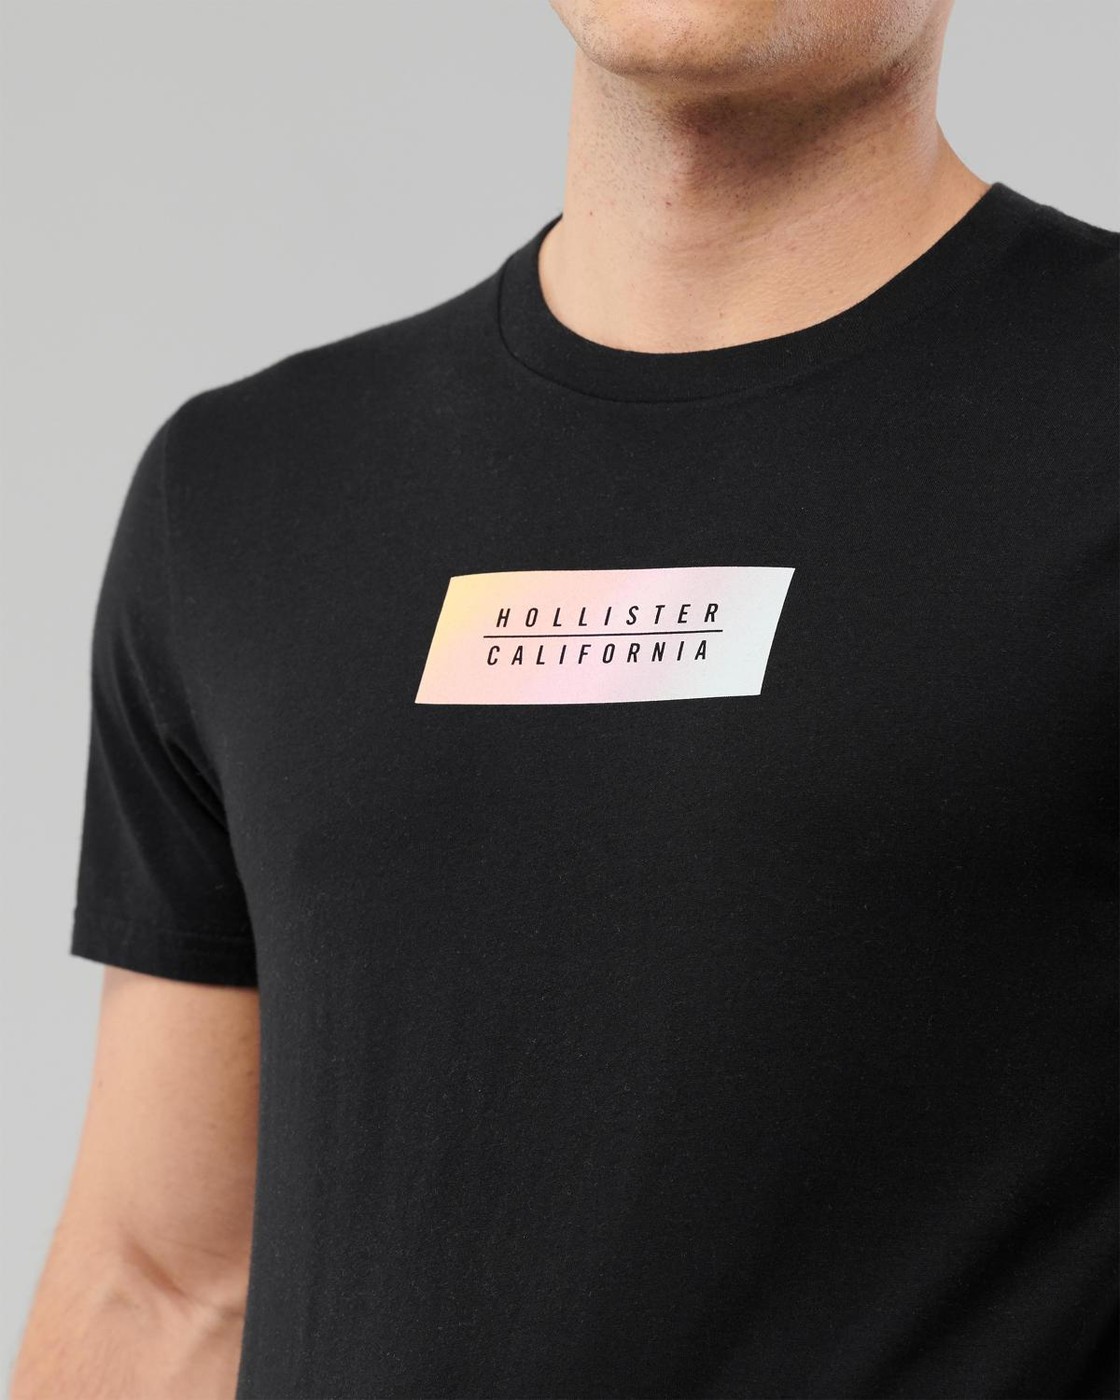 Черная футболка - мужская футболка Hollister, L, L